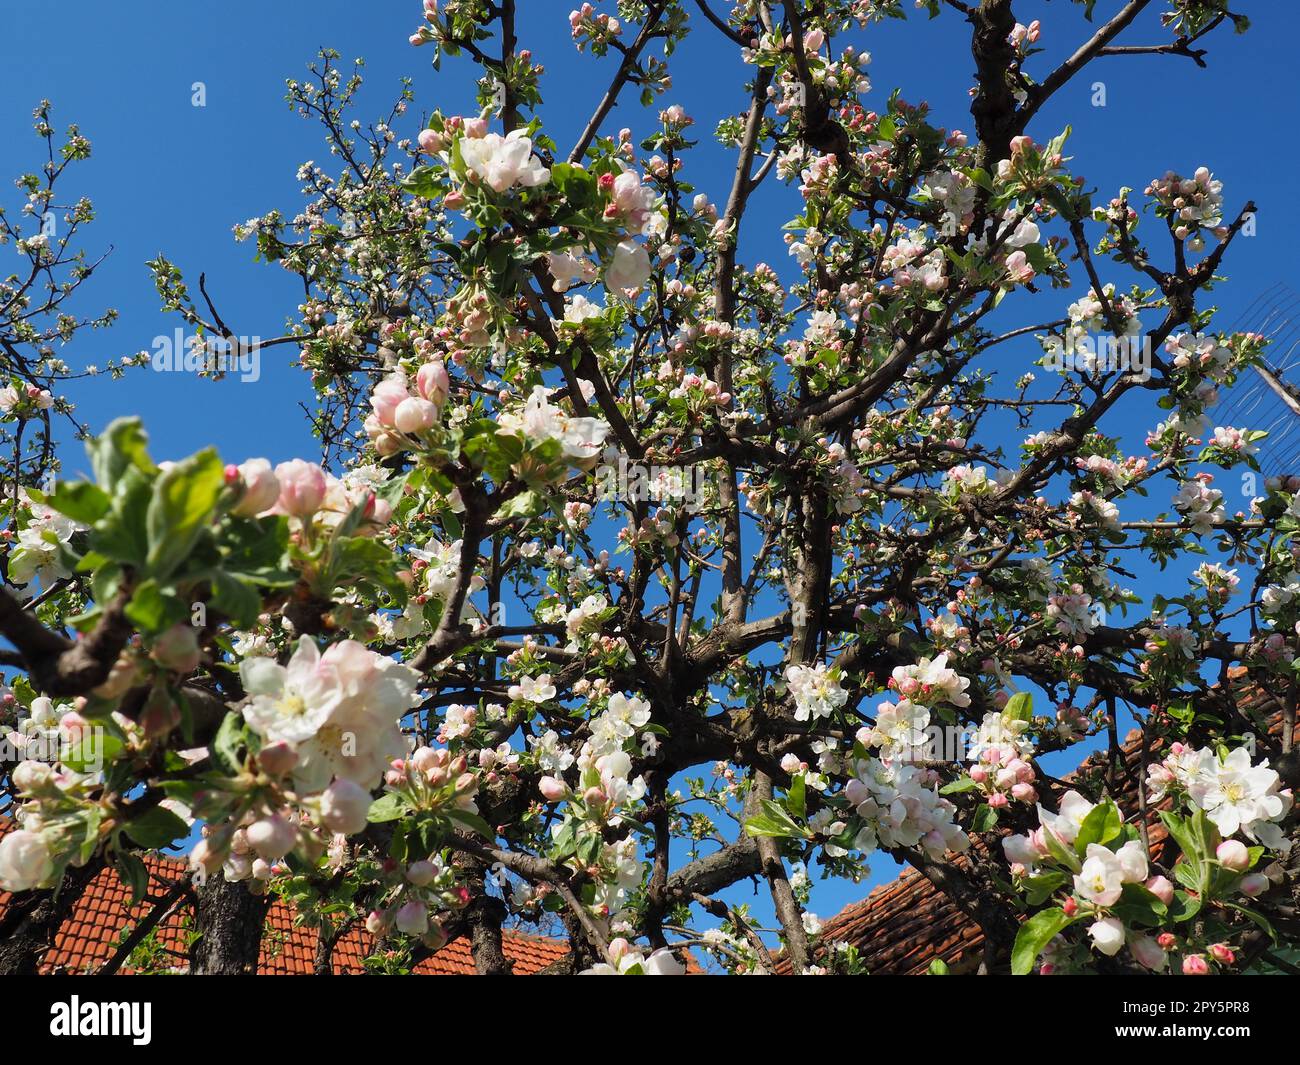 Blühende Blumen auf dem Apfelbaum. Apfelbaum in Blüte. Weiße und rosafarbene wunderschöne Blumen auf den Zweigen eines Baumes. Blauer Himmel und rote Dachziegel im Hintergrund. Frühlingsblüte Stockfoto